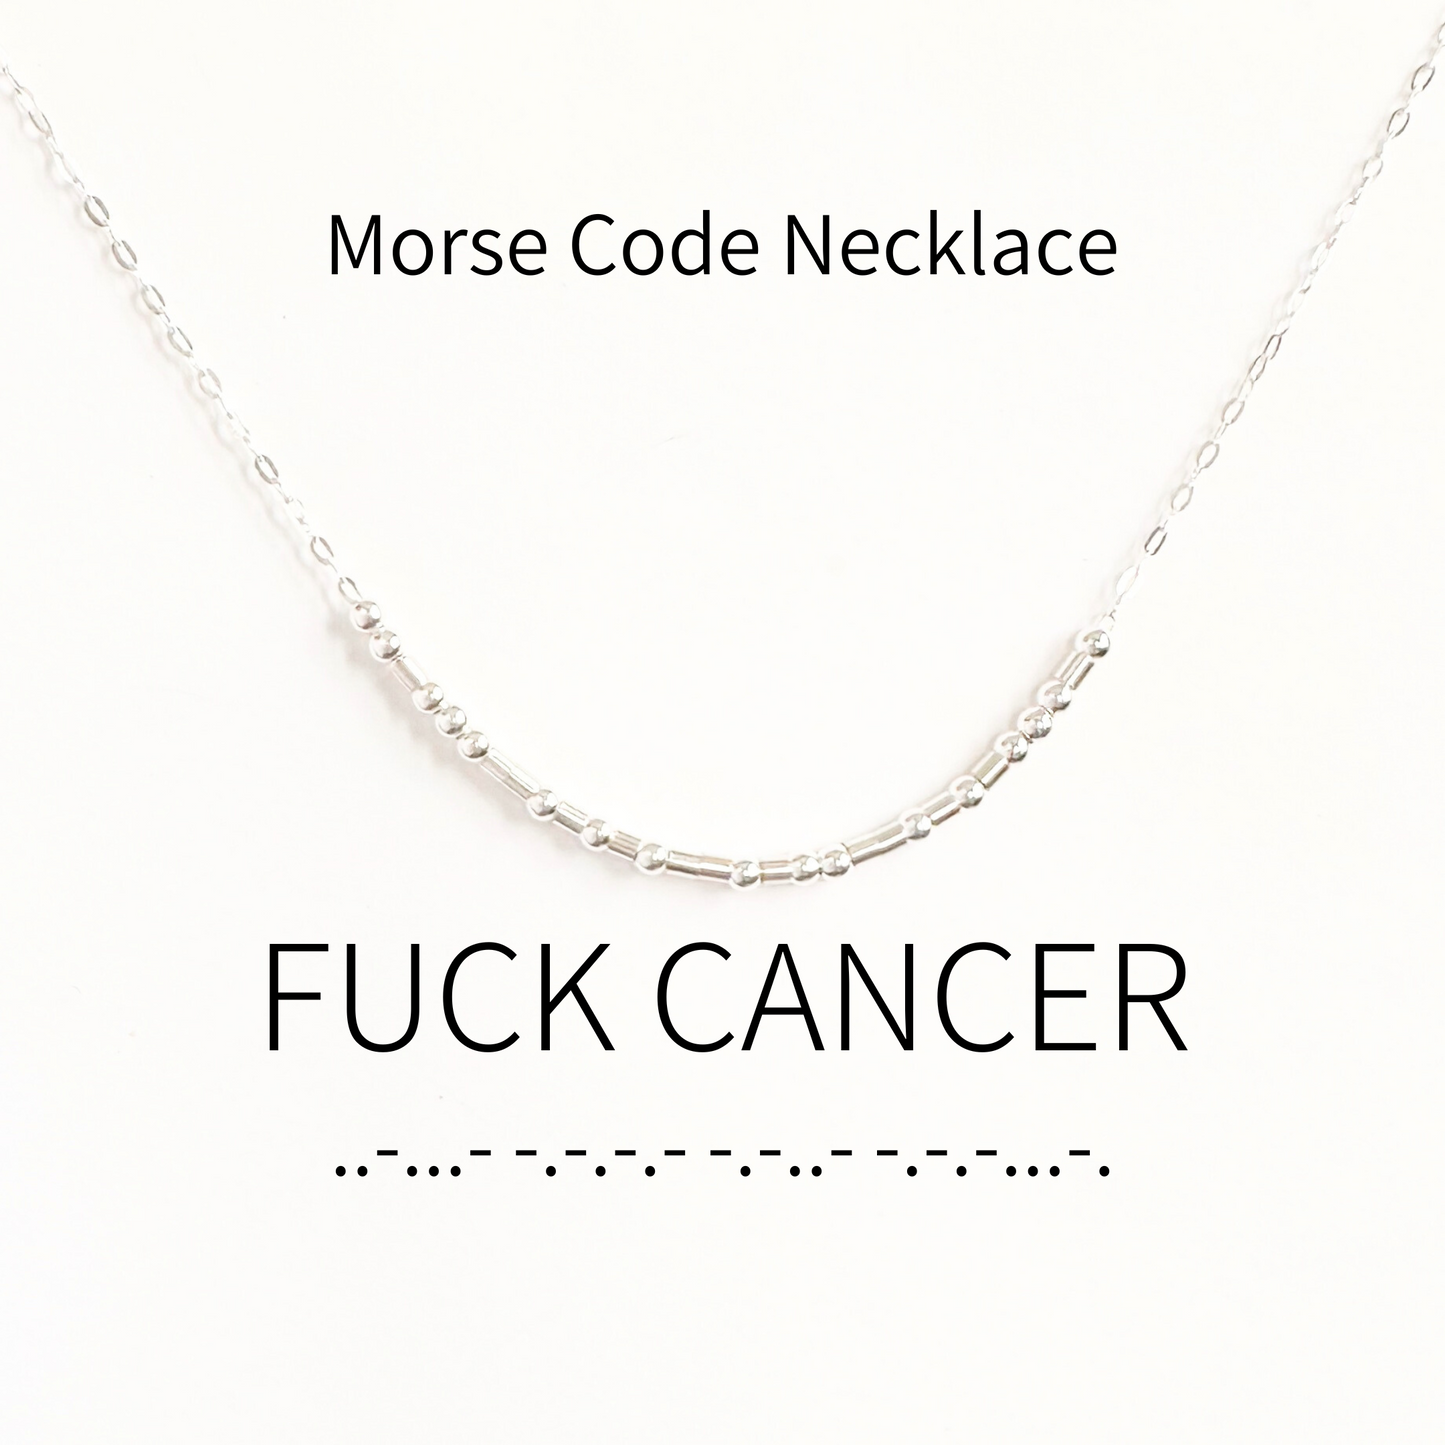 Fuck Cancer Morse Code